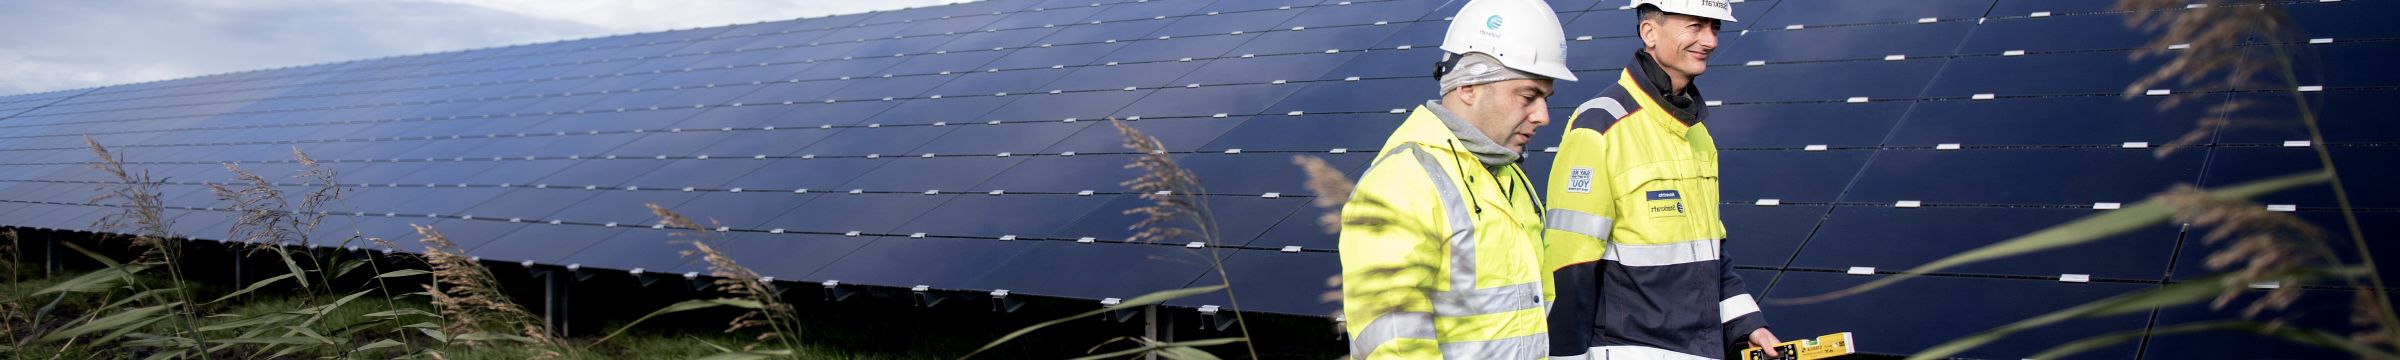 Zwei Mitarbeiter laufen im Solarpark Lange Runde herum